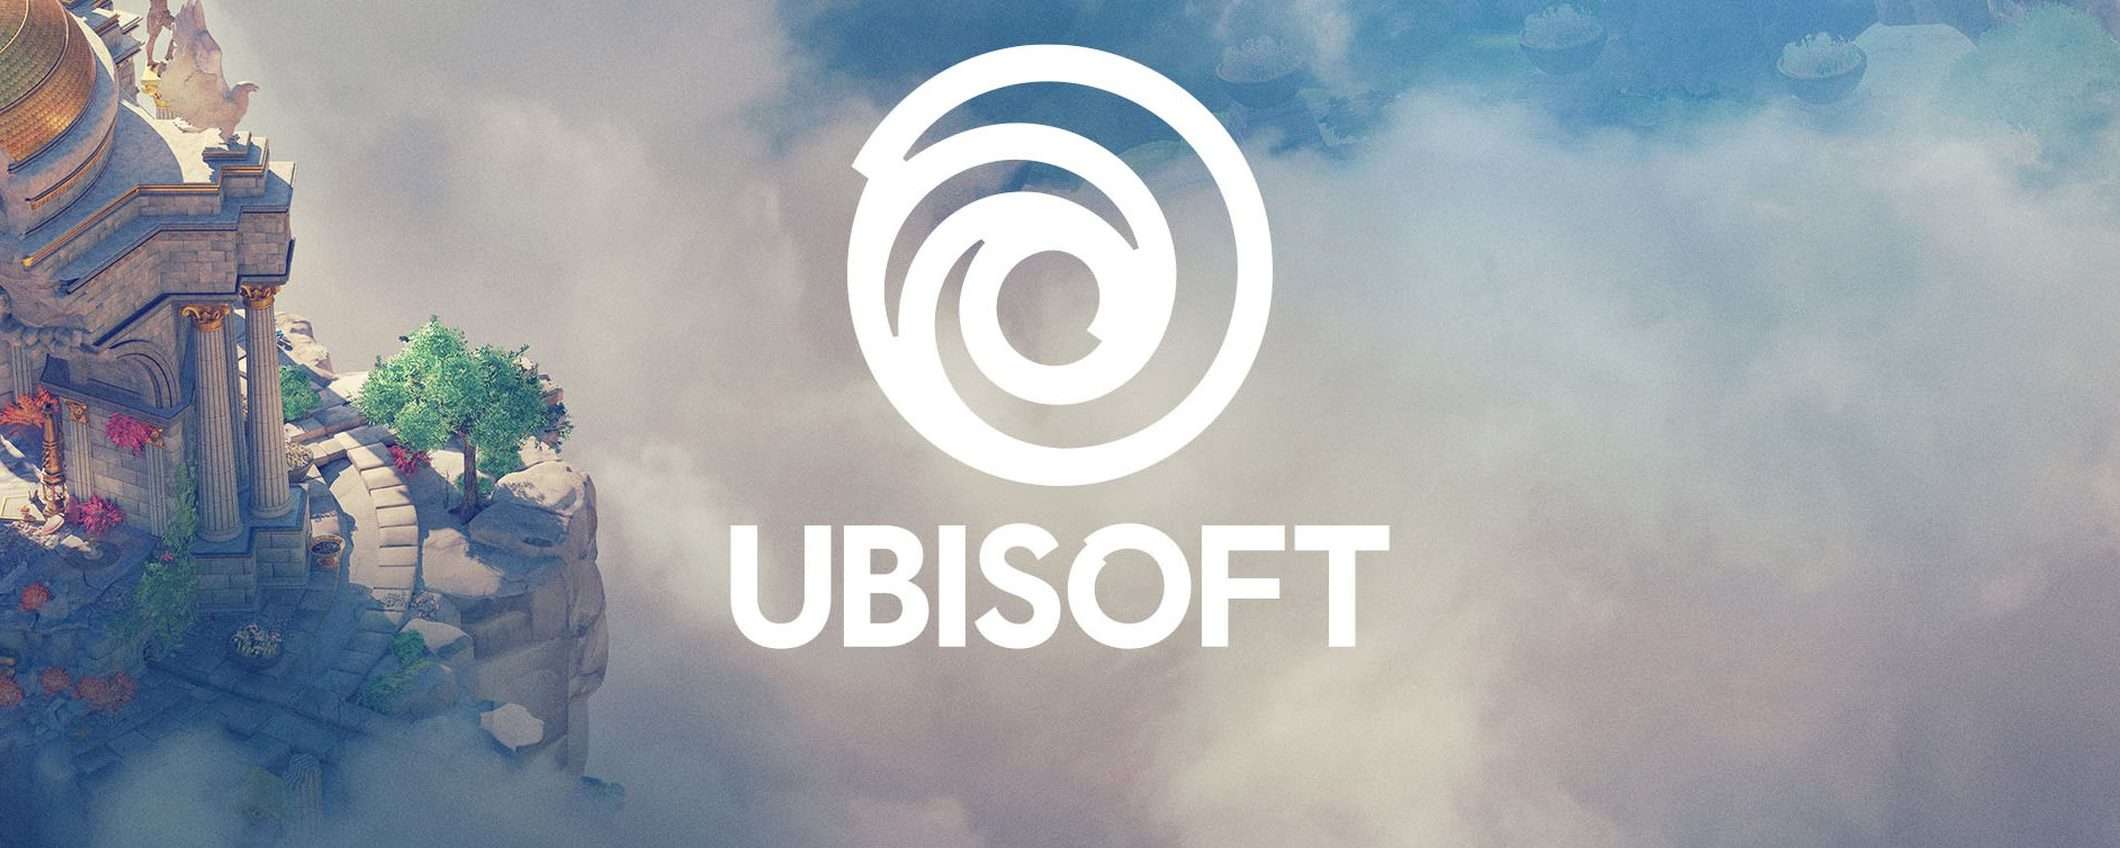 Ubisoft: intrusione e furto di 900 GB di dati?